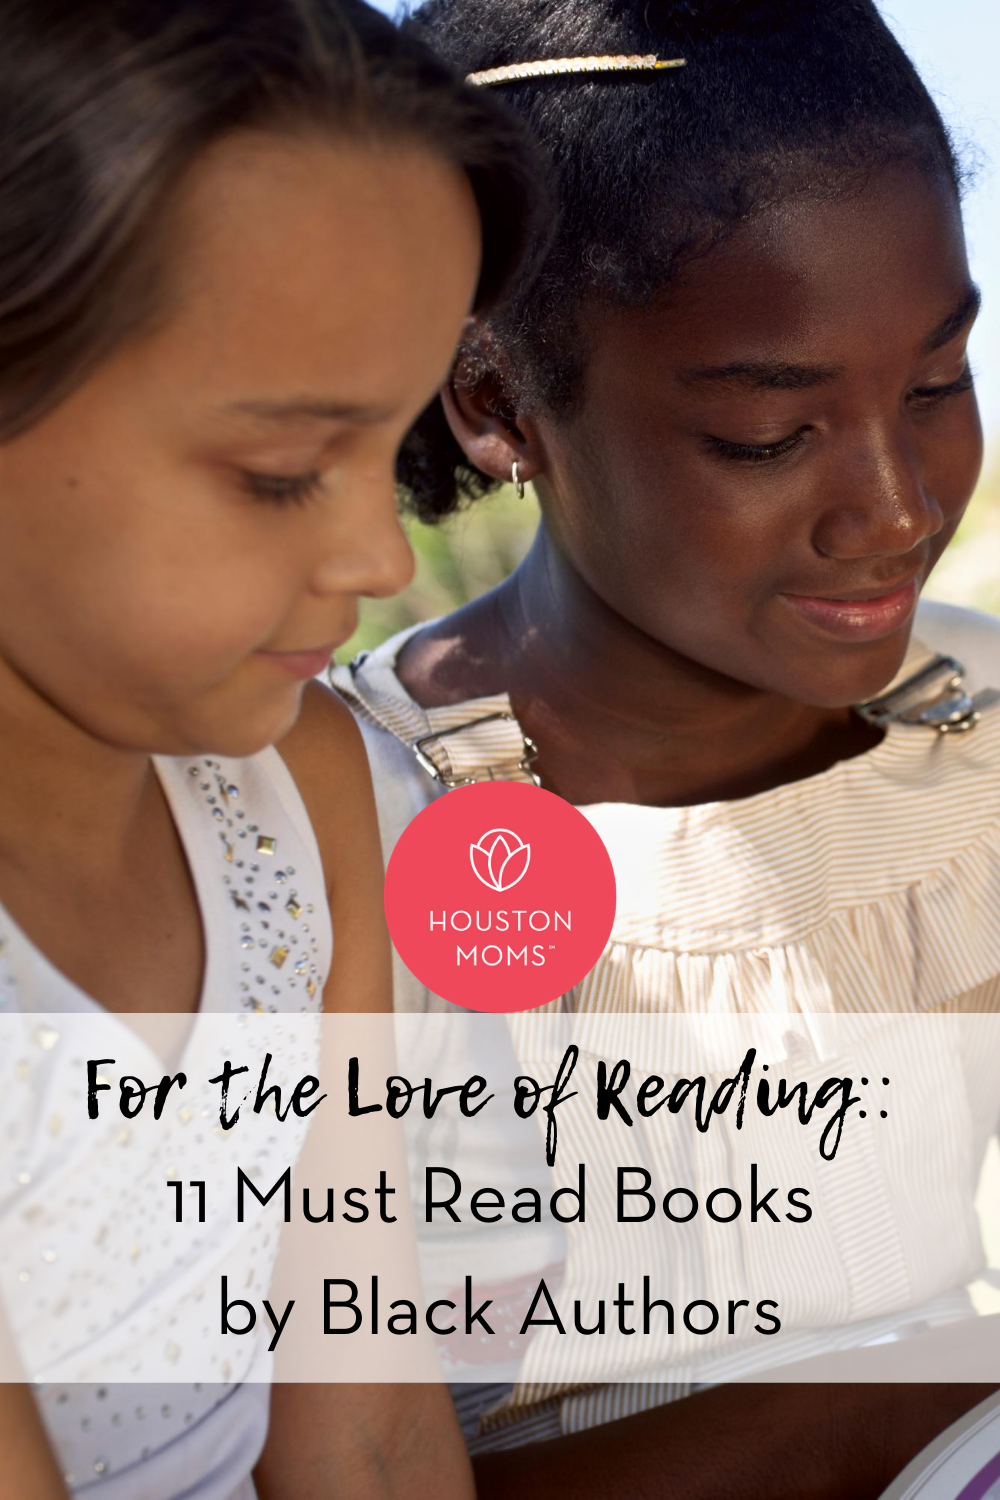 Houston Moms "For the Love of Reading:: 11 Must Read Books by Black Authors" #houstonmoms #houstonmomsblog #momsaroundhouston